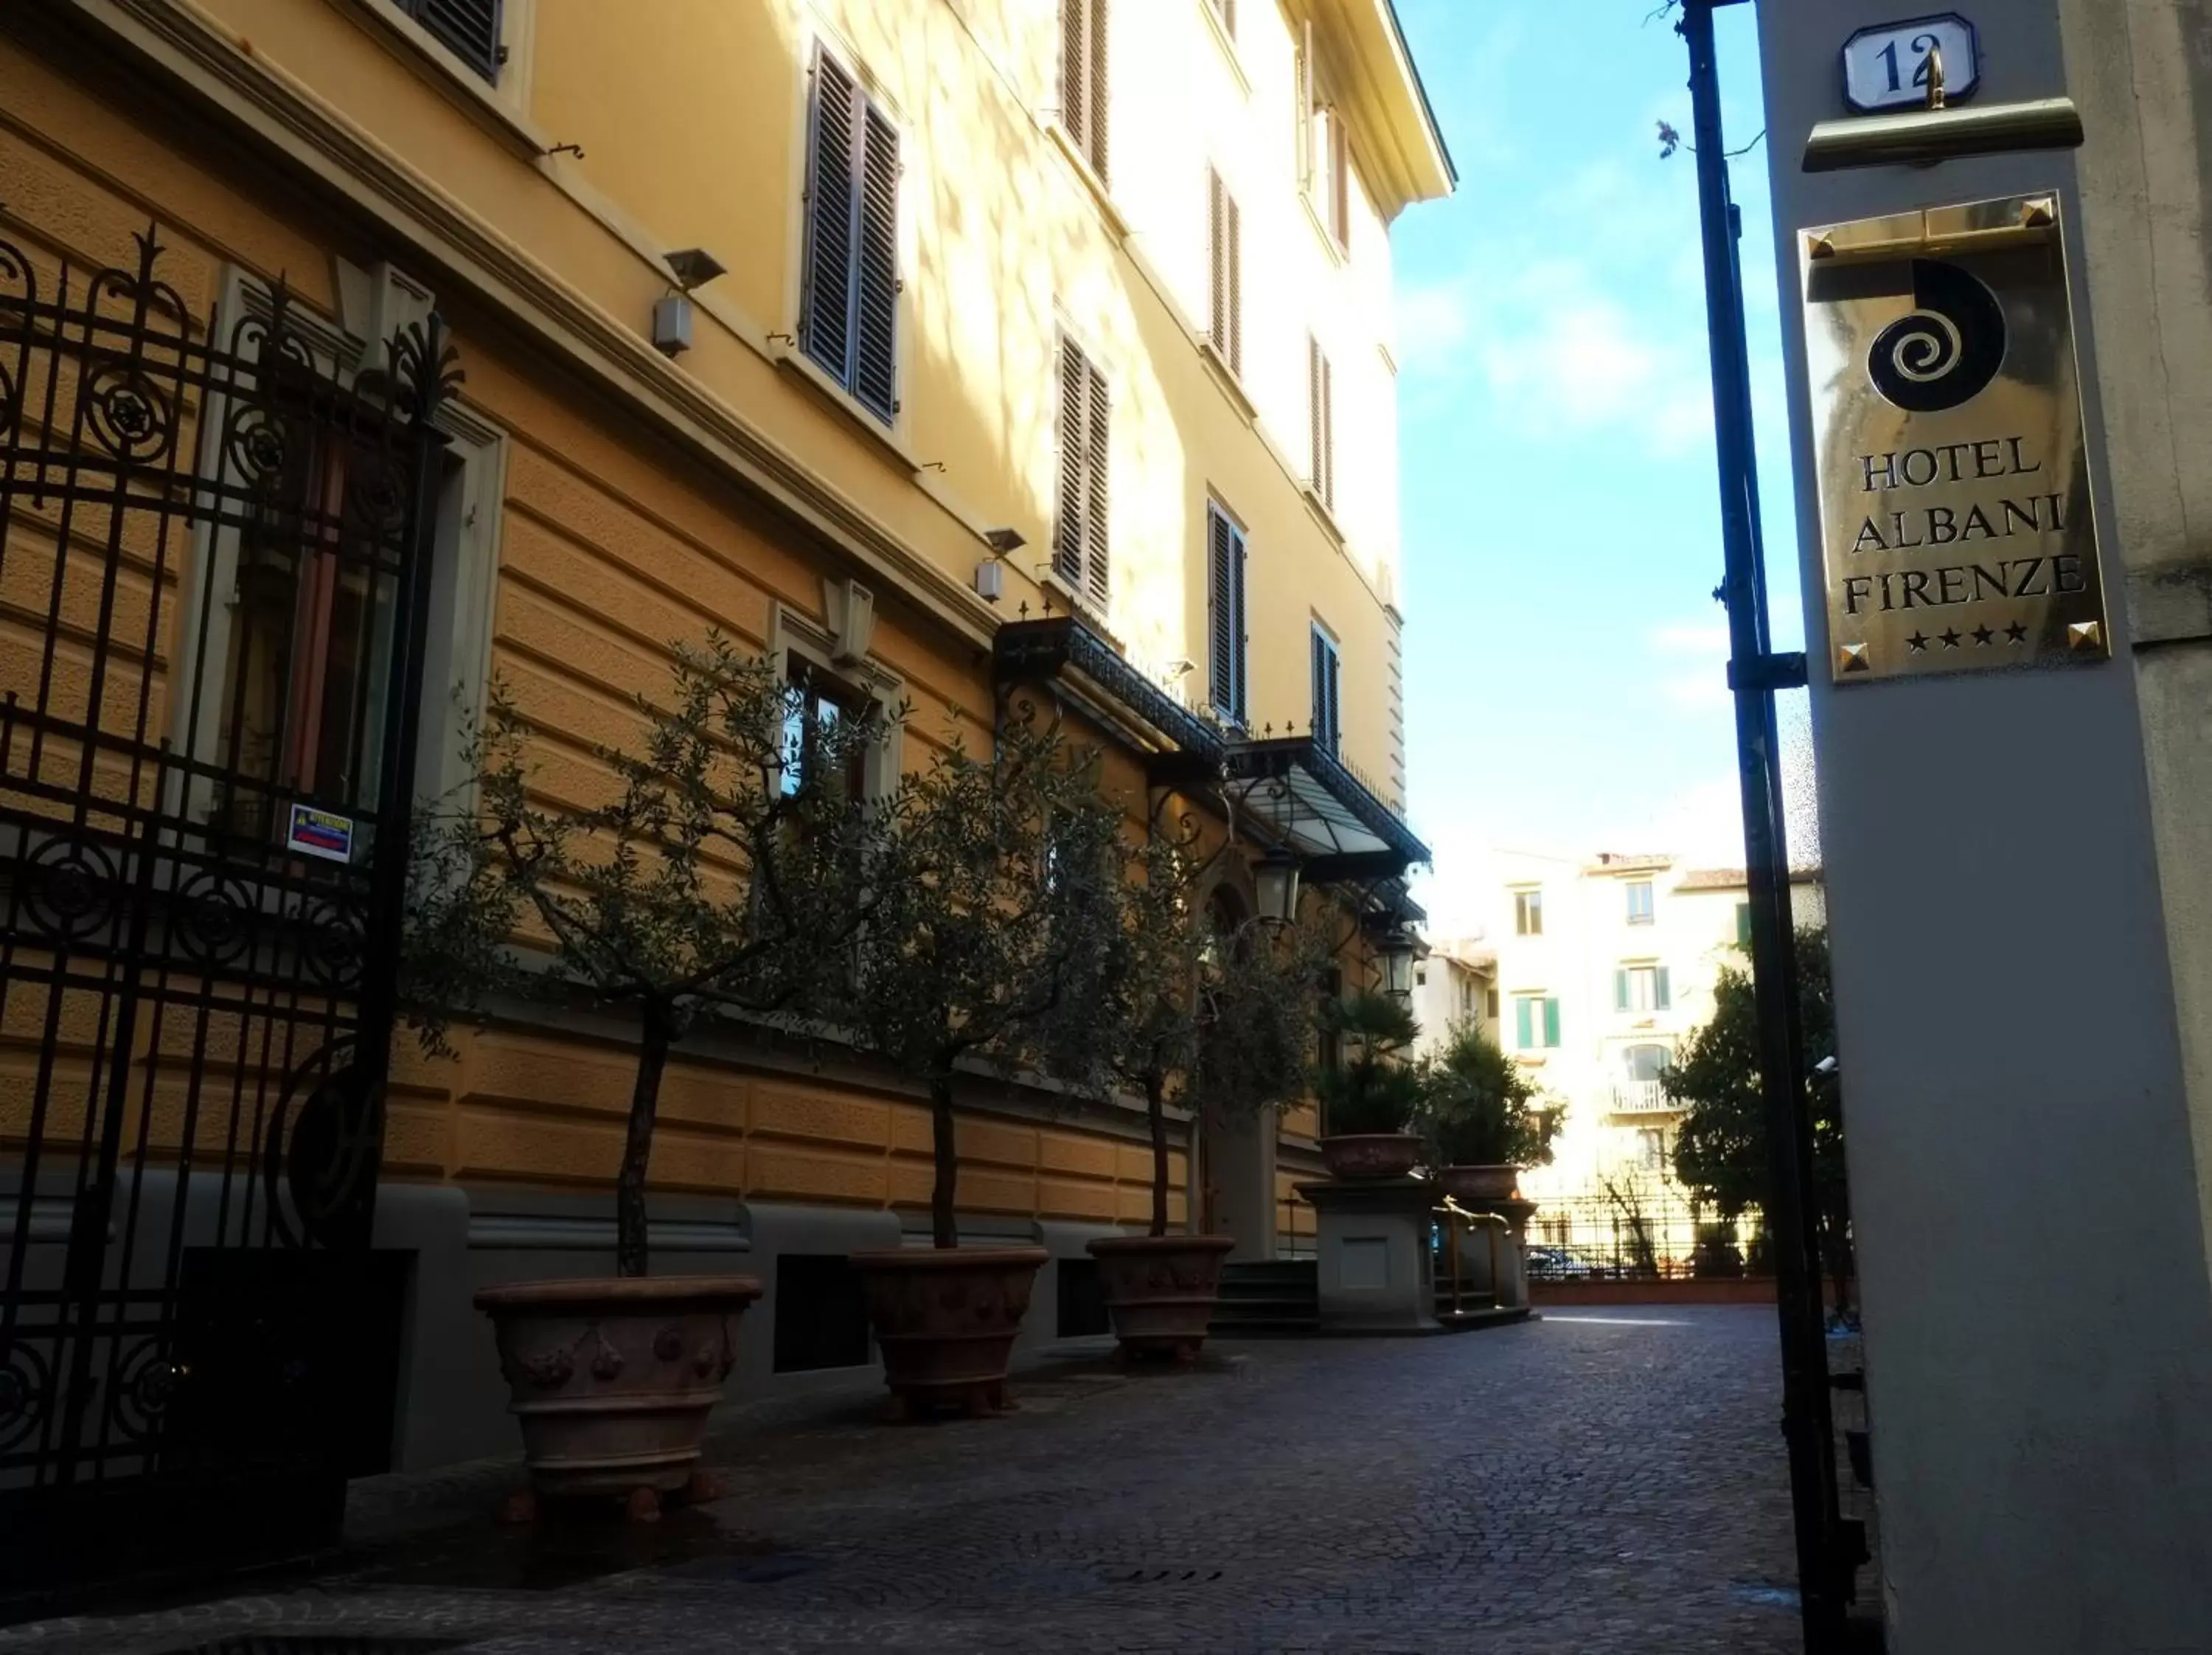 Facade/entrance in Hotel Albani Firenze